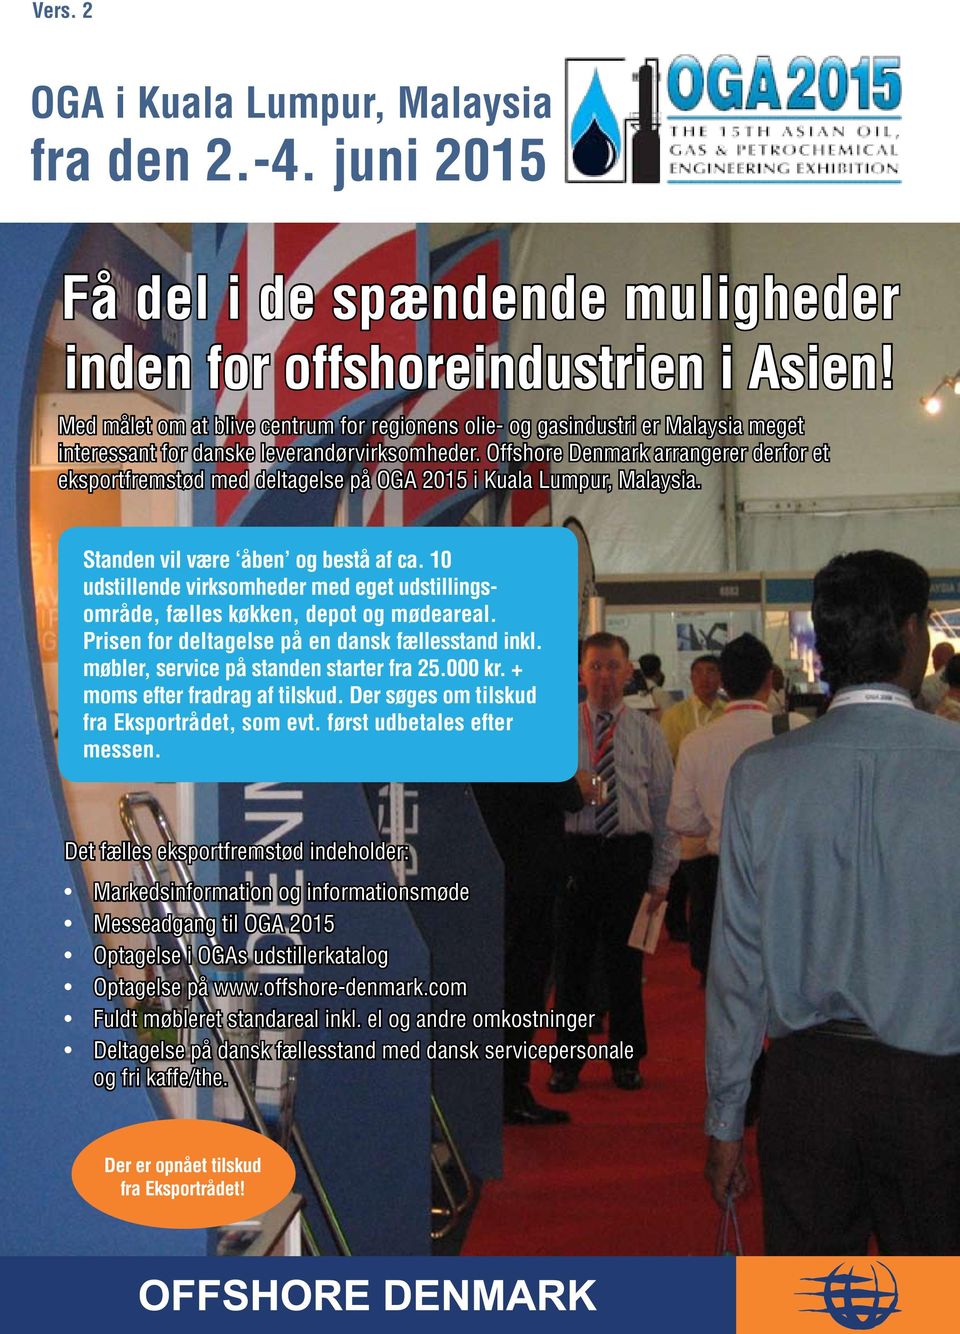 Offshore Denmark arrangerer derfor et eksportfremstød med deltagelse på OGA 2015 i Kuala Lumpur, Malaysia. Standen vil være åben og bestå af ca.